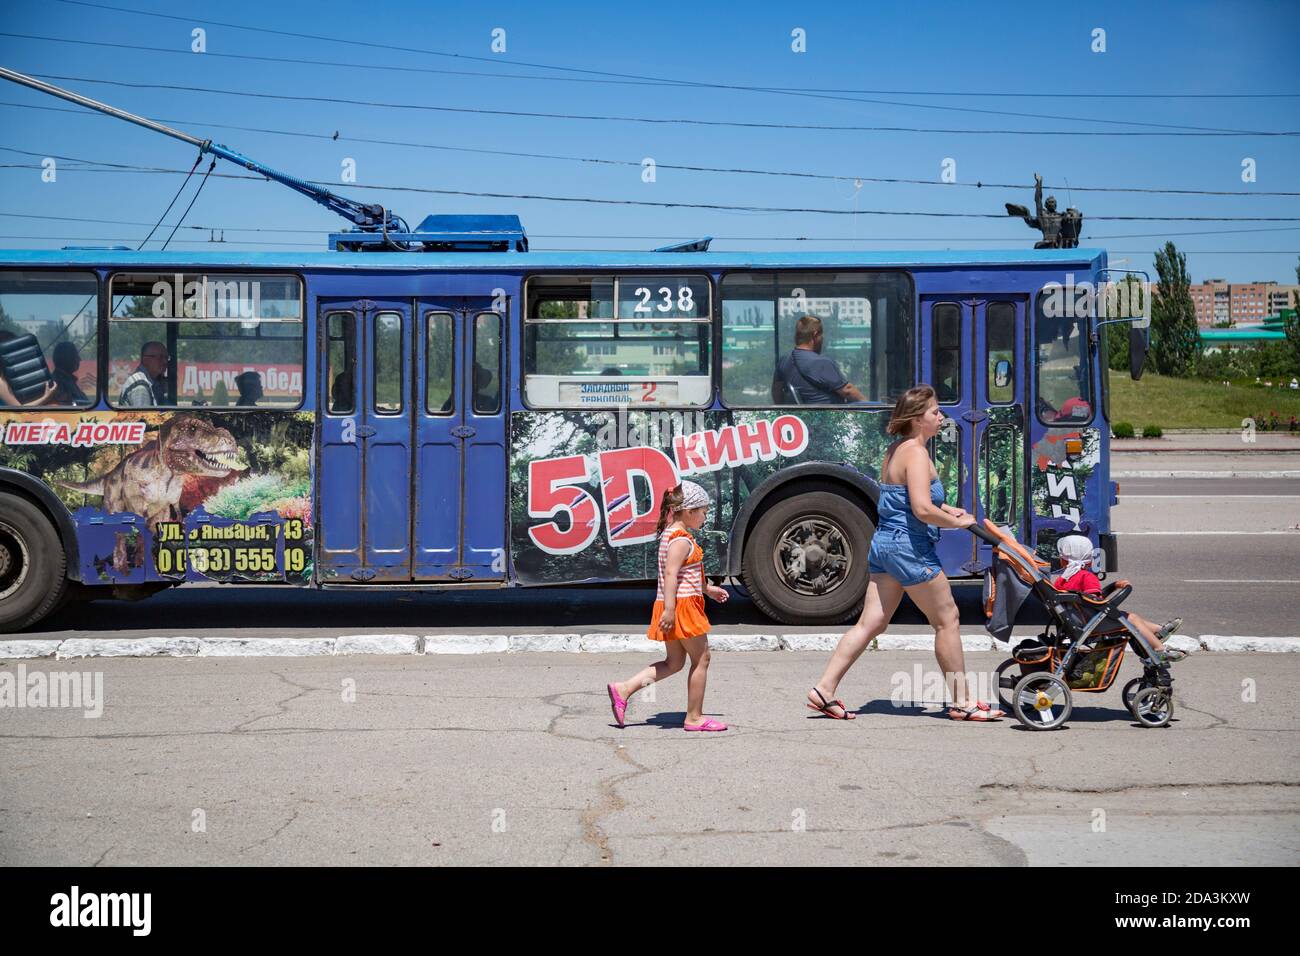 Scène de rue avec piétons et bus de transport en commun à Tiraspol, Pridnestrovian République moldave (Transnistrie). Banque D'Images